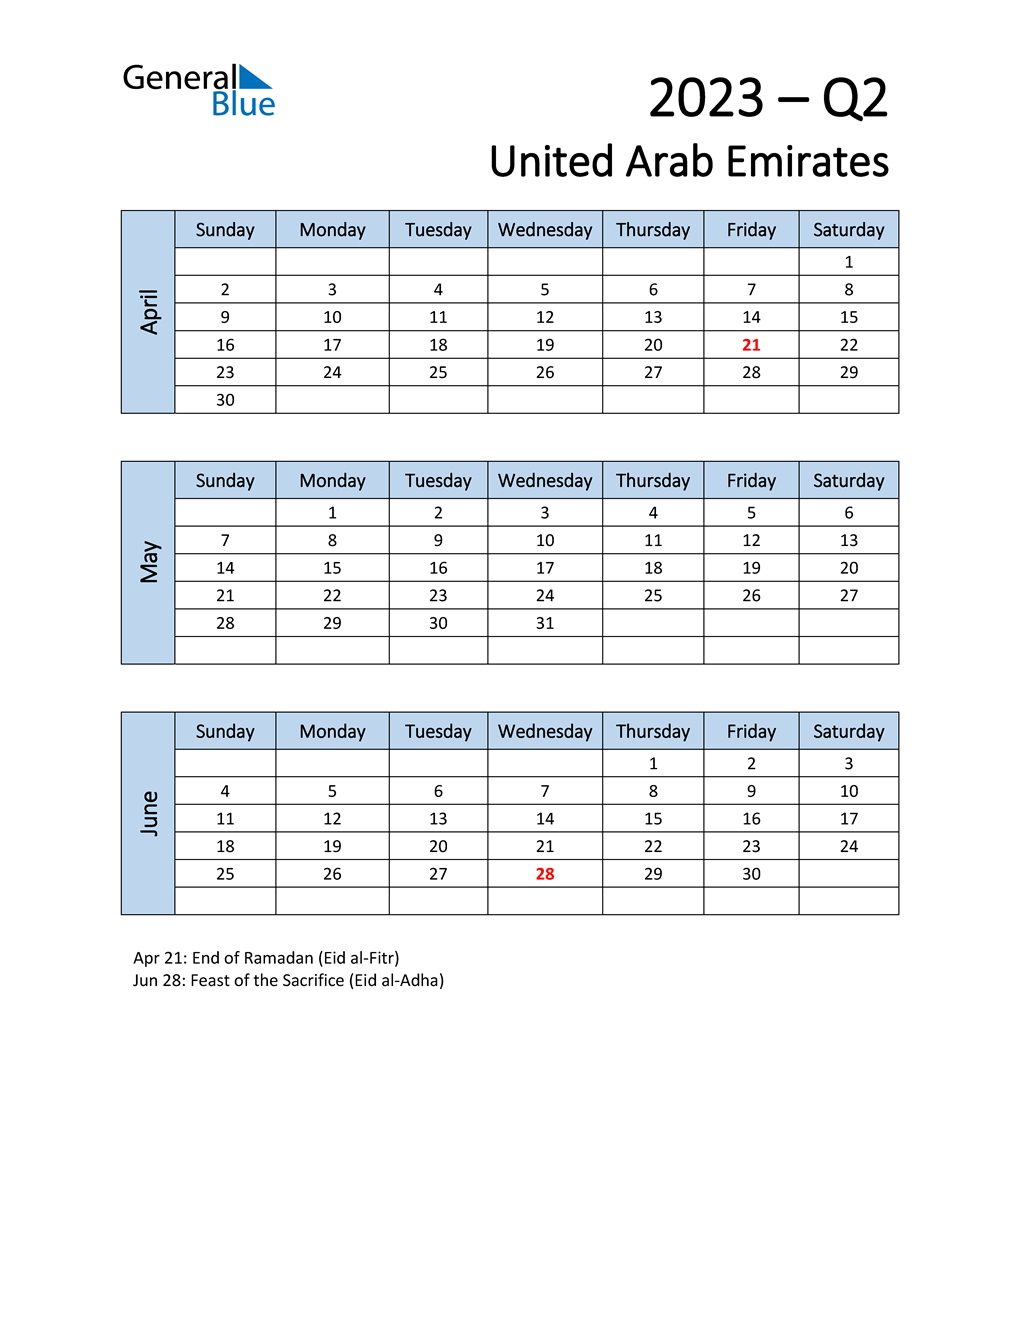  Free Q2 2023 Calendar for United Arab Emirates